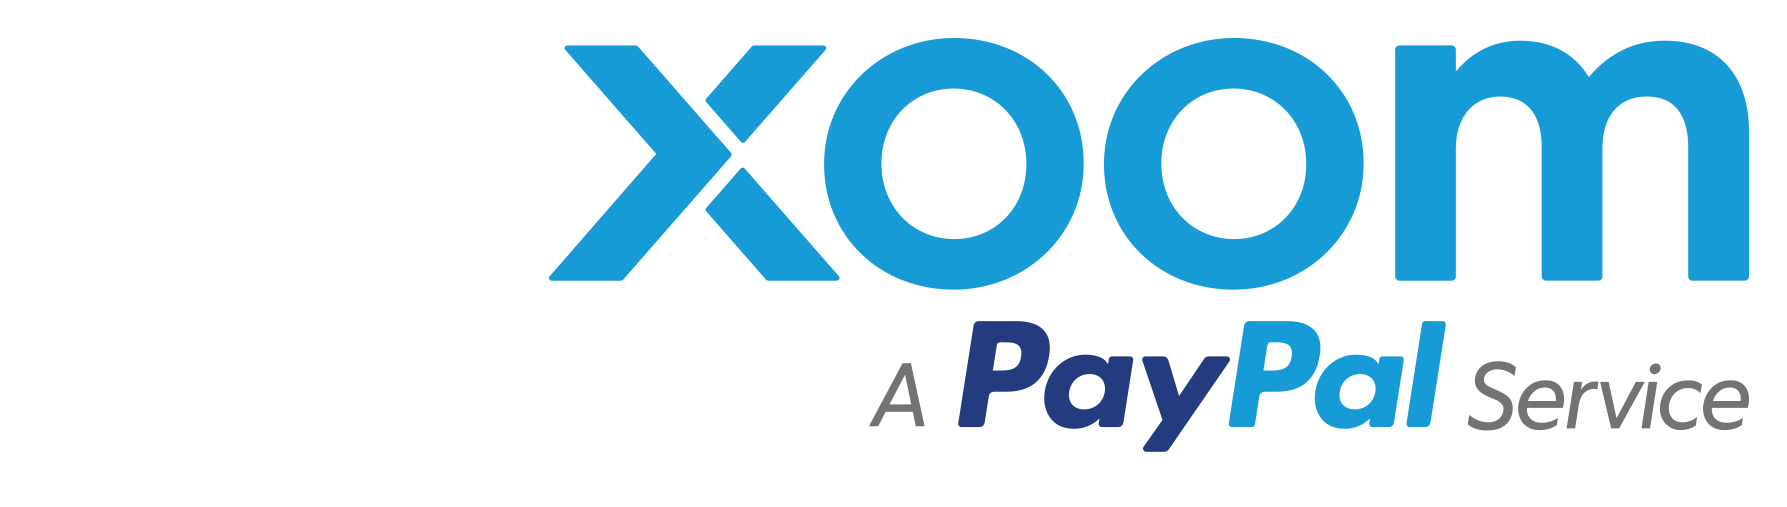 xoom paypal logo